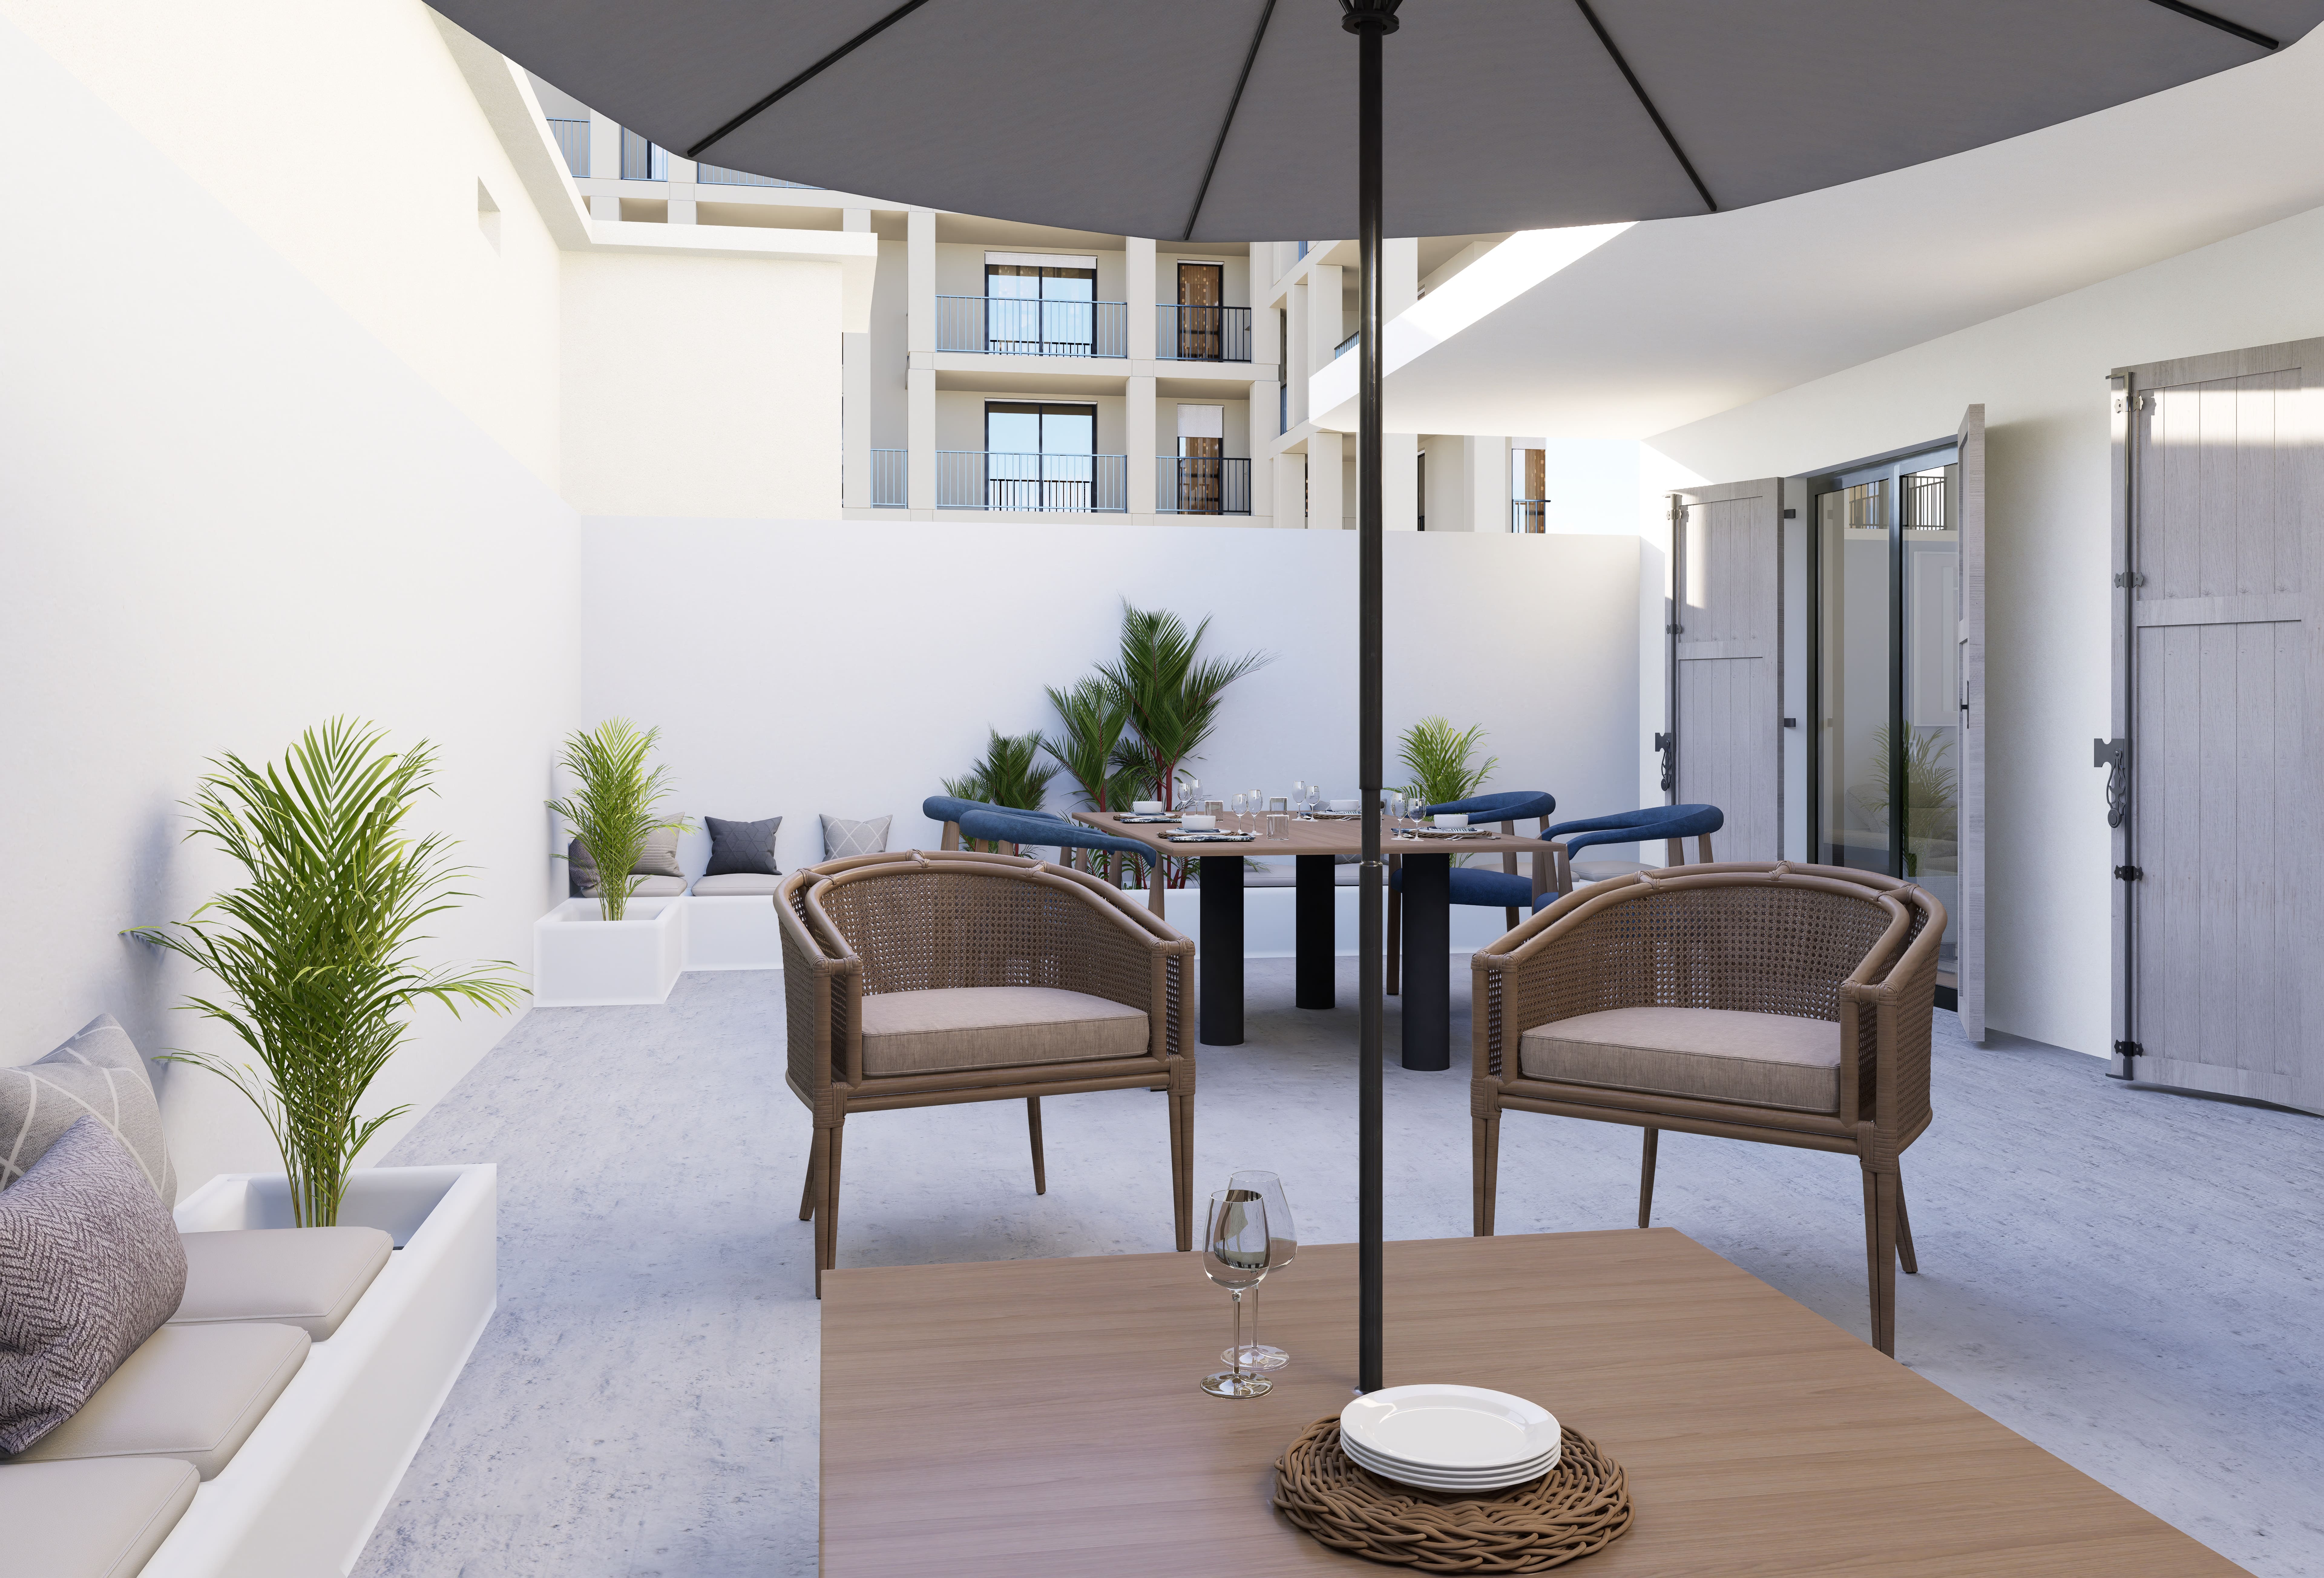 ab3d design - Projet d'aménagement d'appartement en partenariat avec THE AGENCY IMMO - Marseille